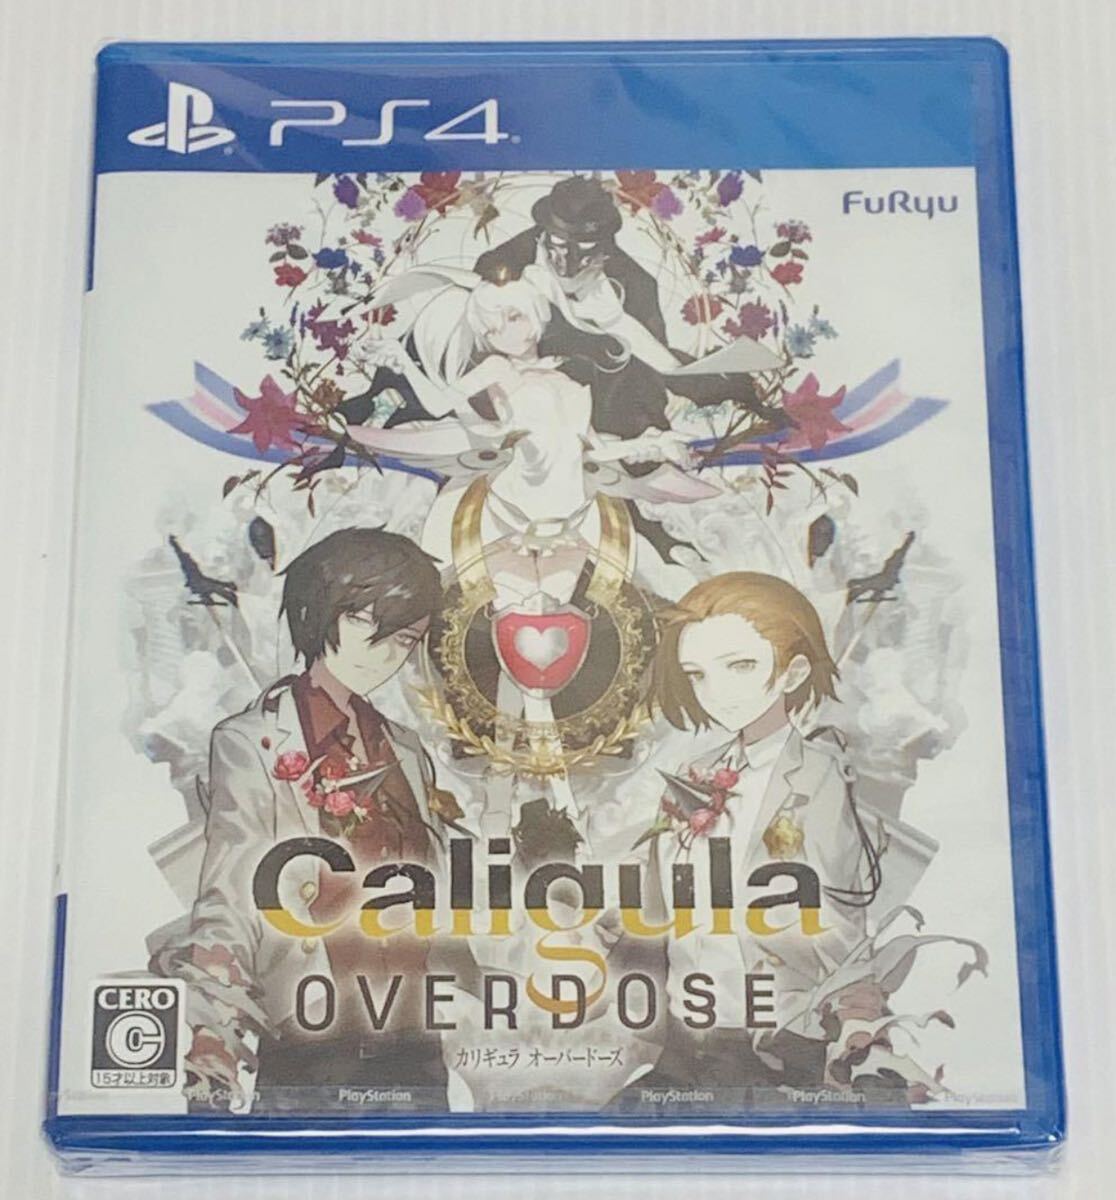  нераспечатанный PS4 Caligula Overdose новый товар не использовался нераспечатанный товар kaligyula over do-z1 иен старт 